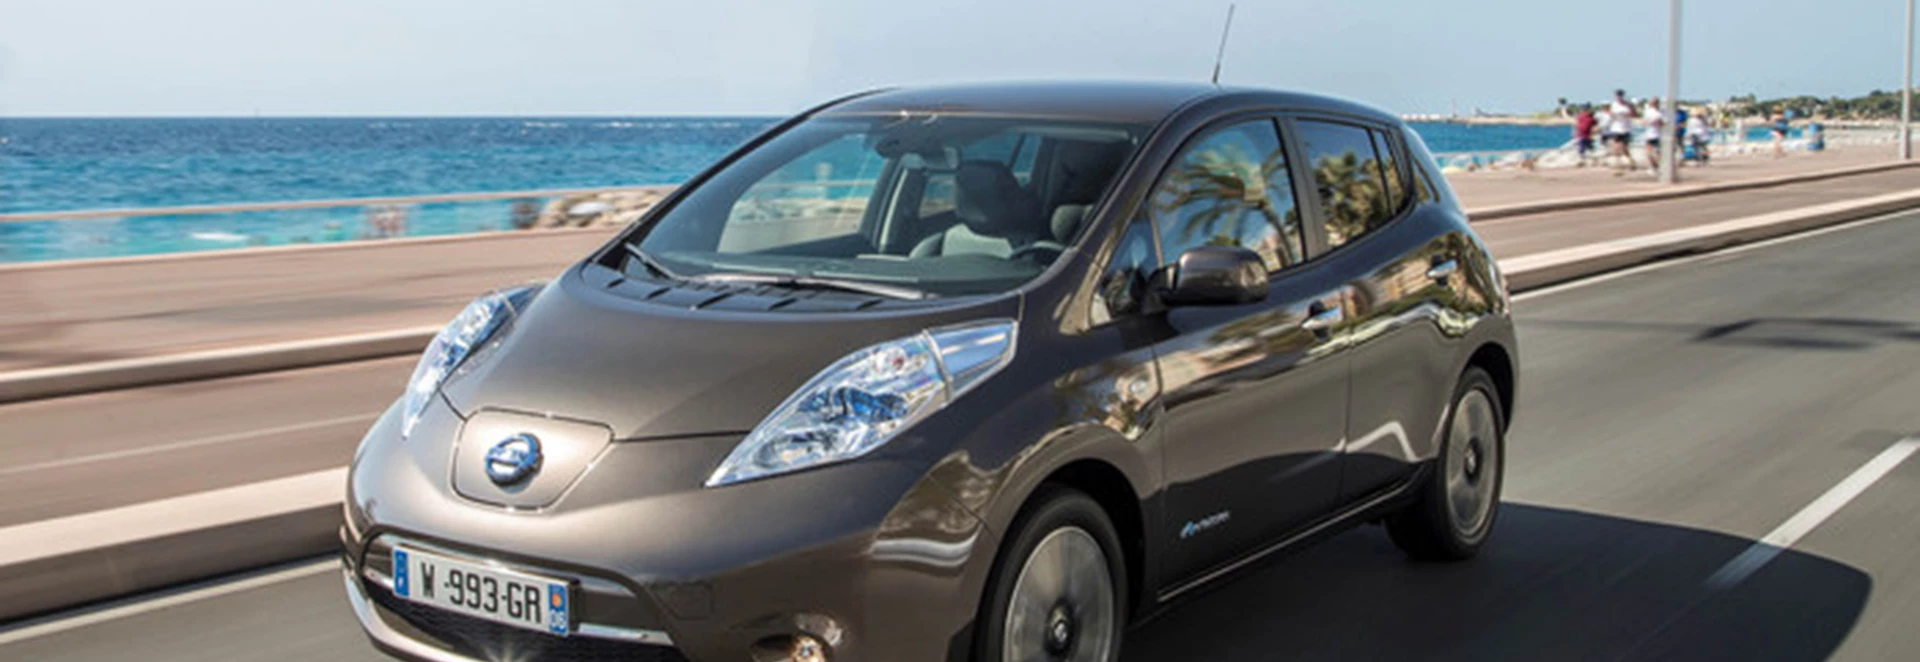 2016 Nissan LEAF delivers extended range